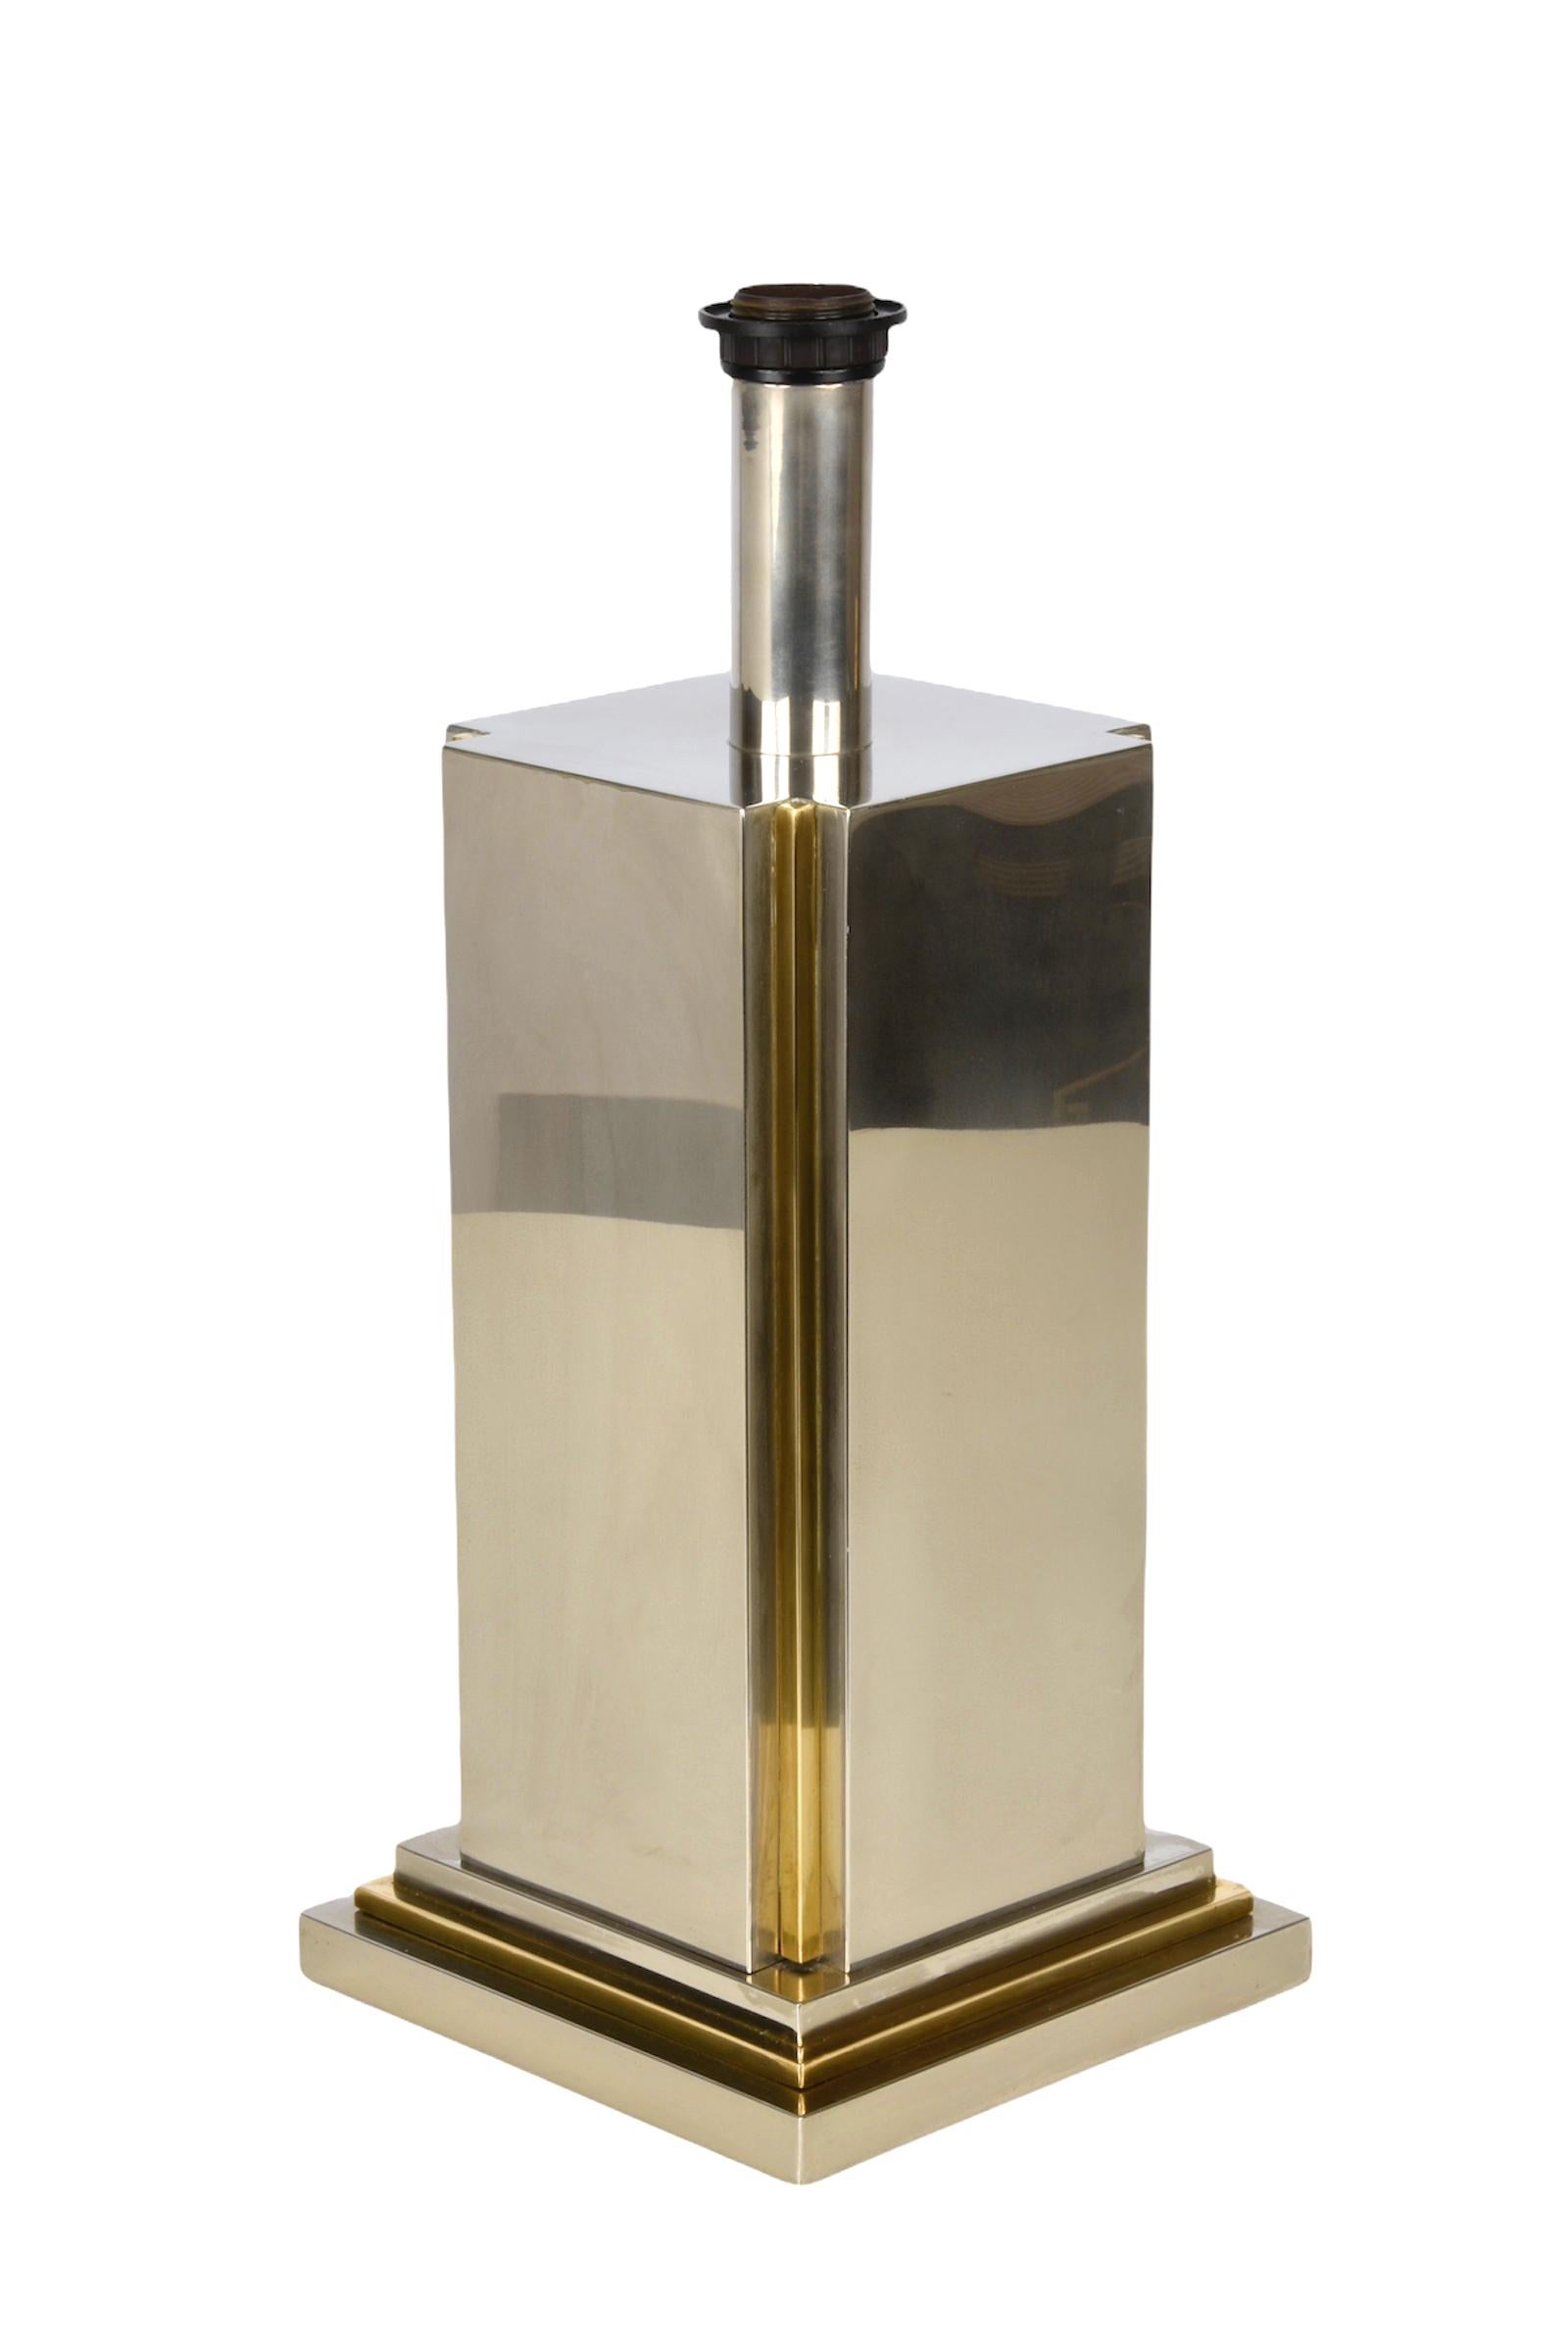 Carlo Venturini Steel and Brass Italian Table Lamp for Bottega del Lume, 1970s For Sale 13